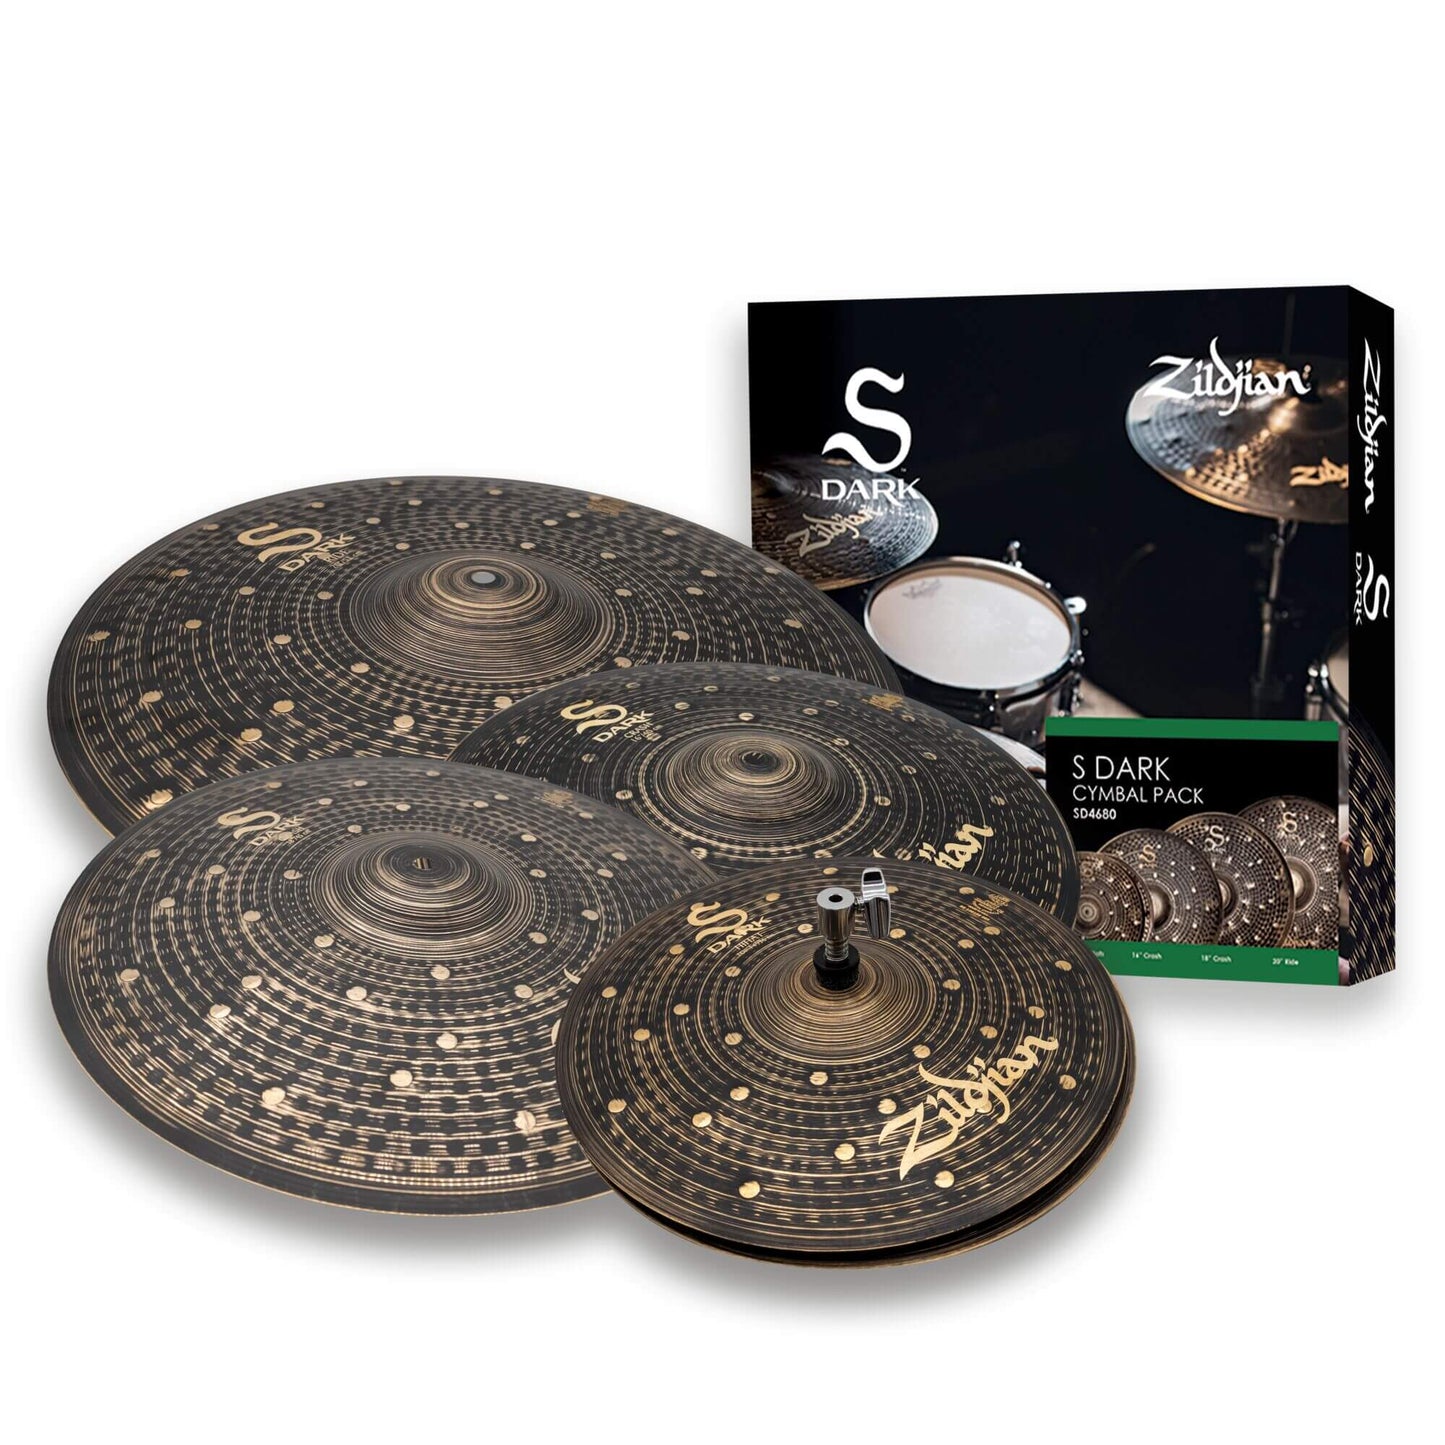 S Dark Cymbal Pack